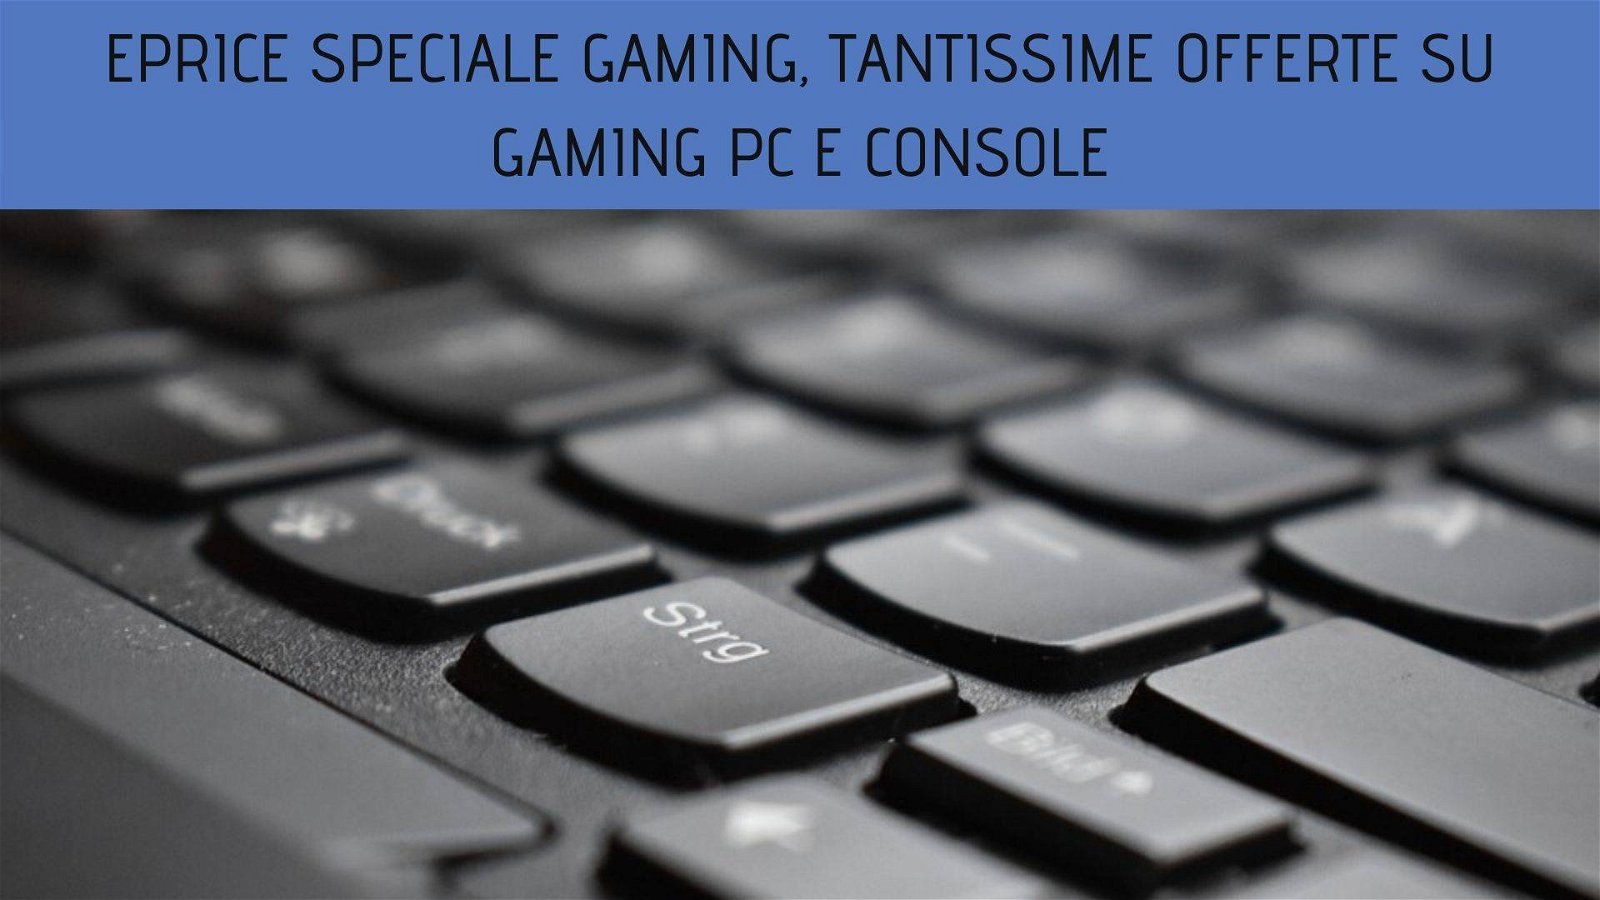 Immagine di ePrice Speciale Gaming, tantissime offerte su Gaming PC e Console